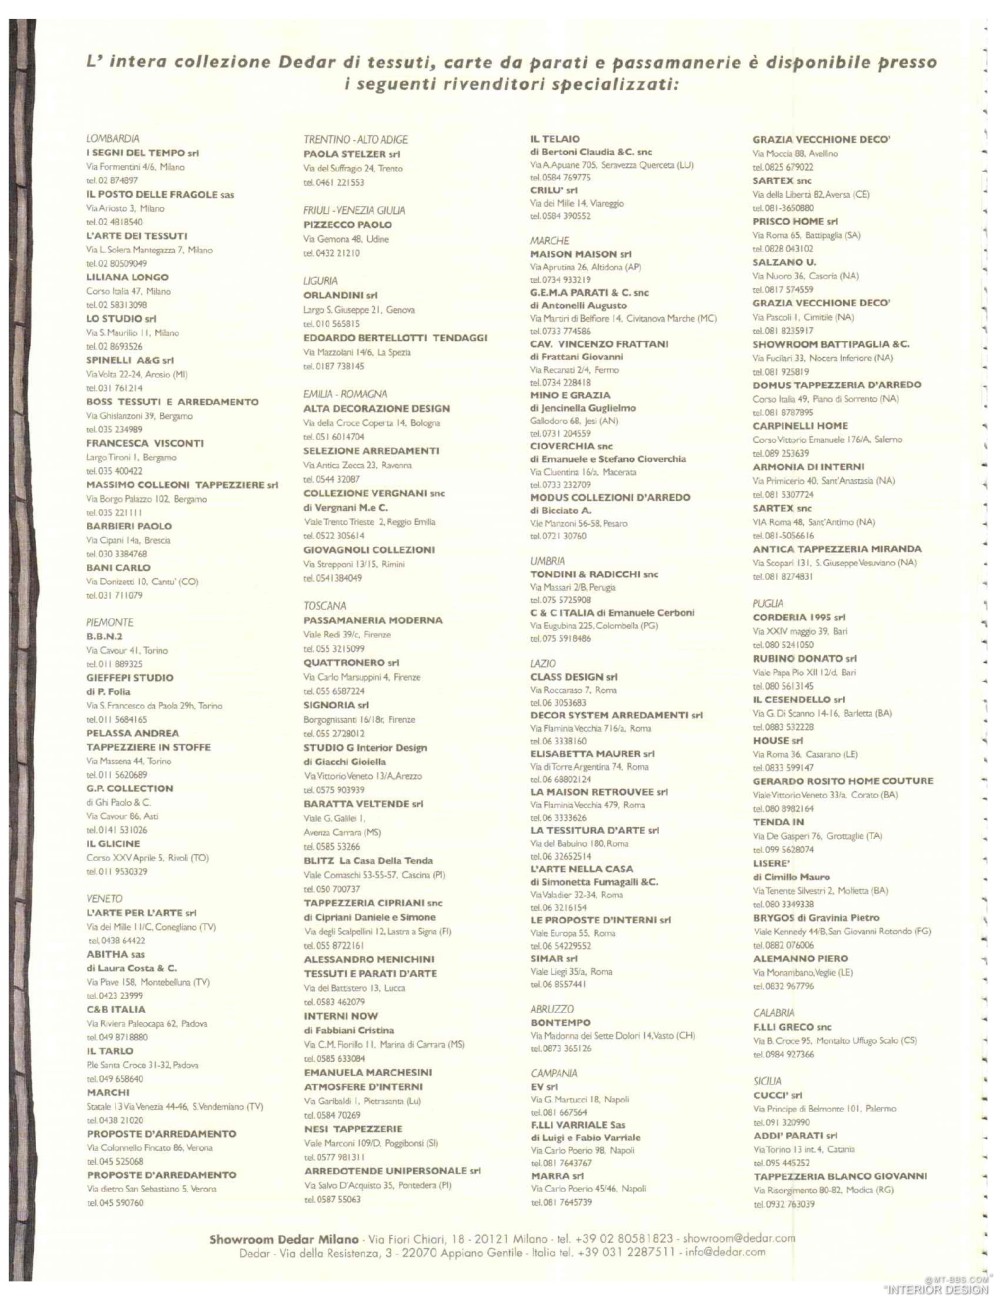 意大利AD 杂志 2012年全年JPG高清版本 全免（上传完毕）_0048.jpg